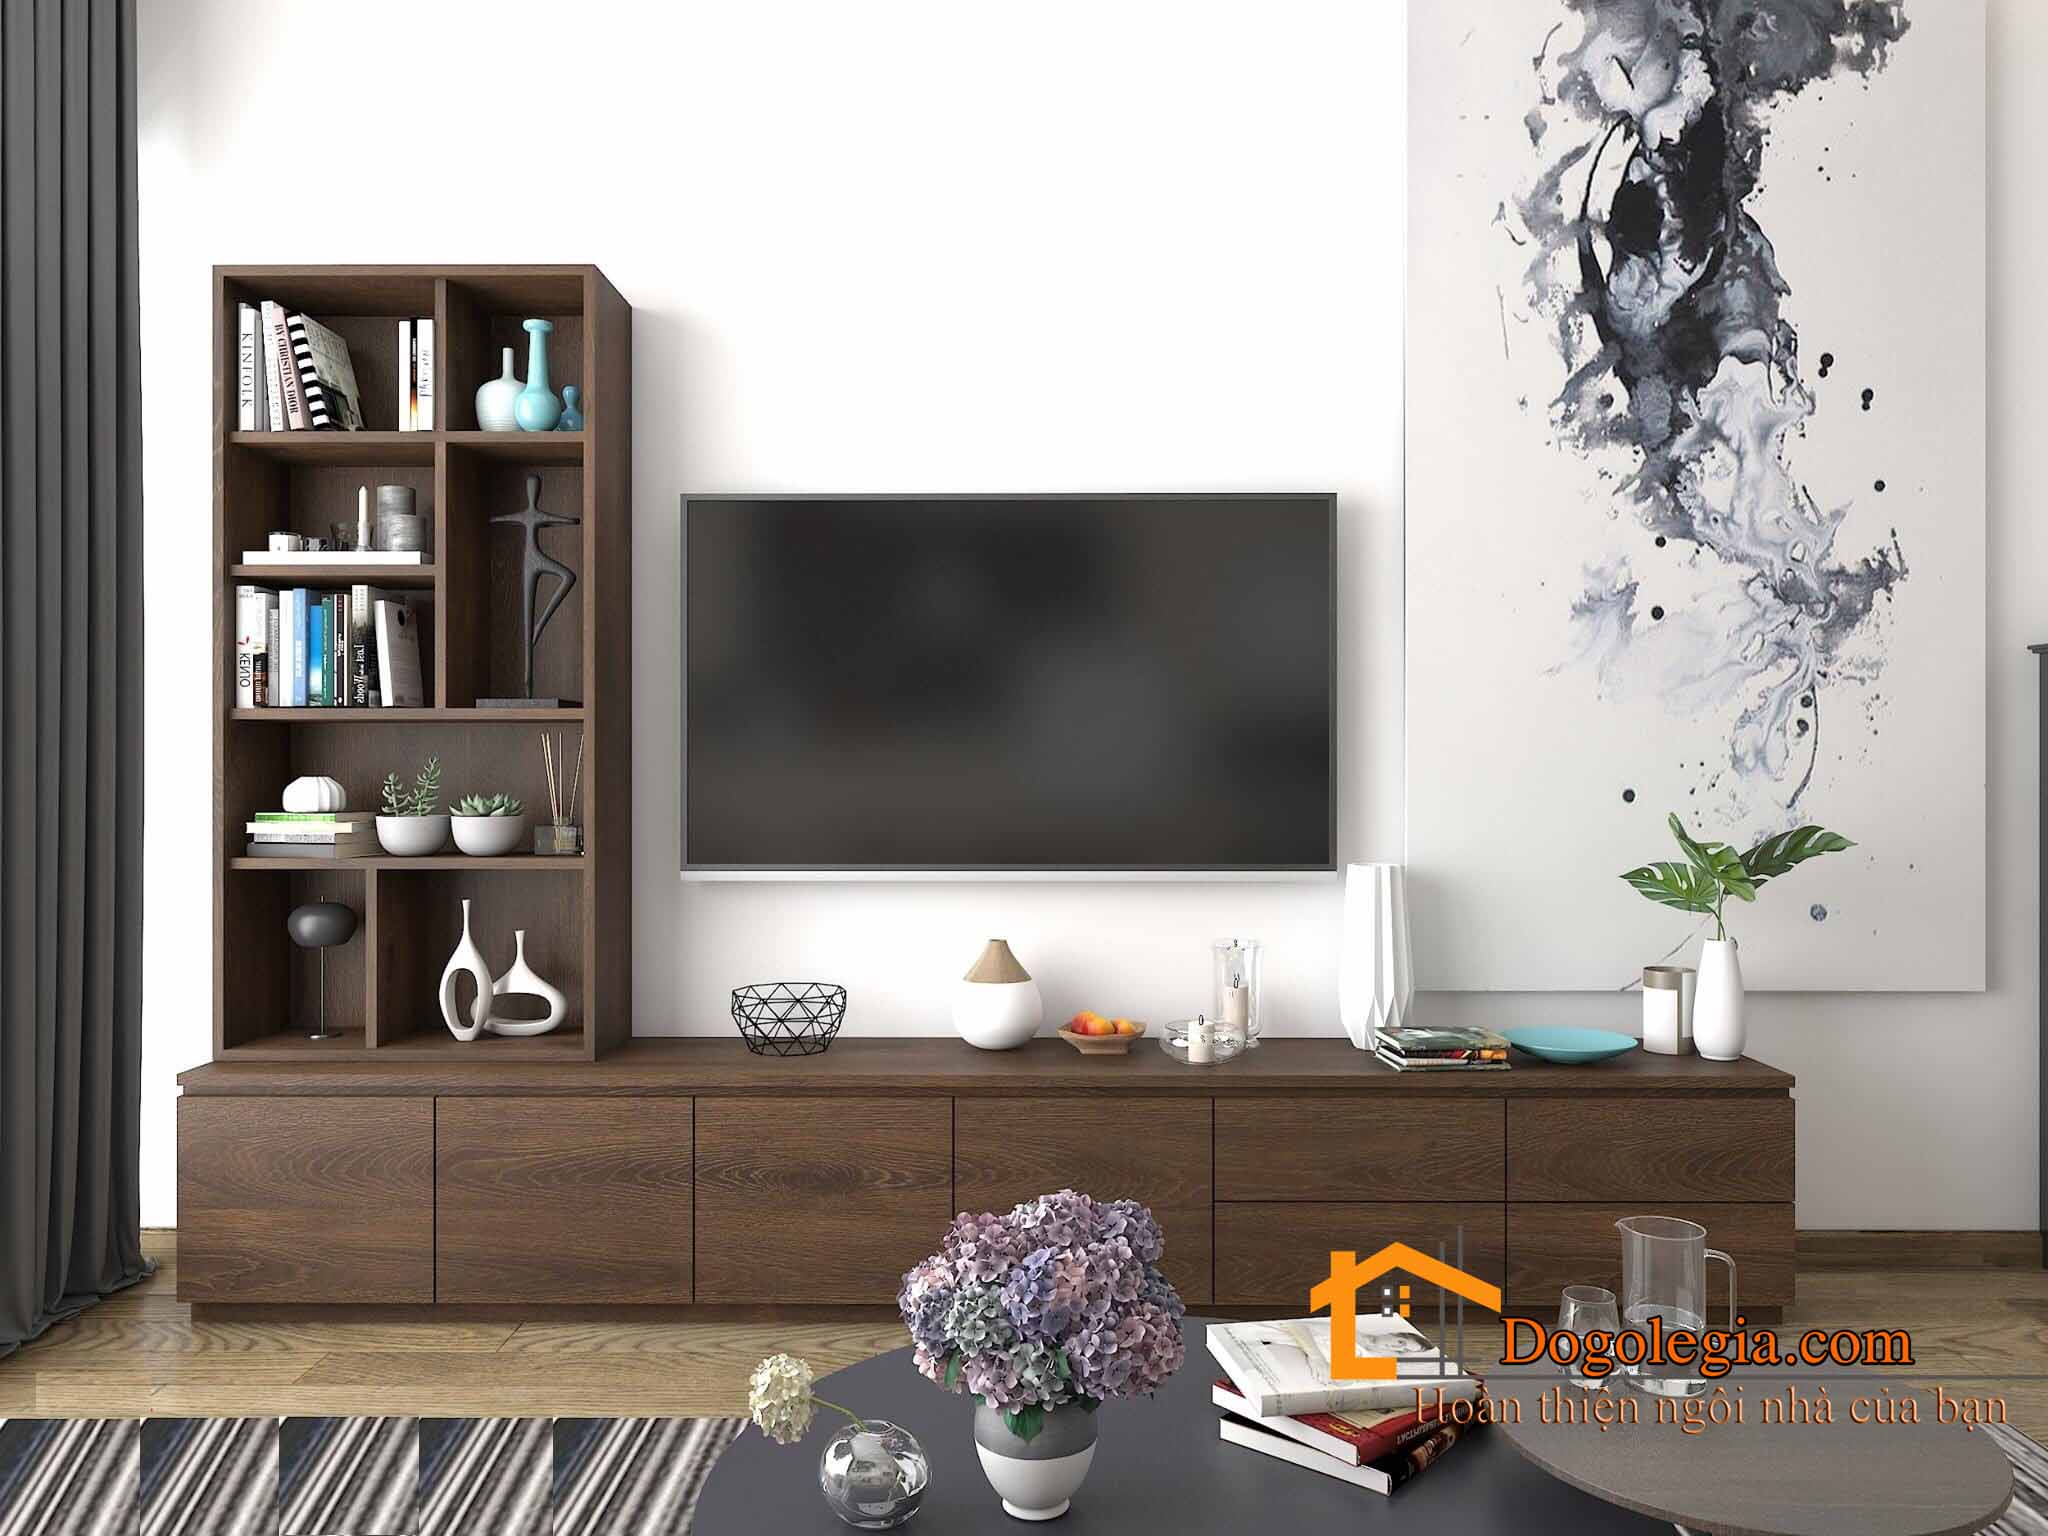 thiết kế kệ tivi gỗ công nghiệp cho phòng khách hiện đại lg-ktv190